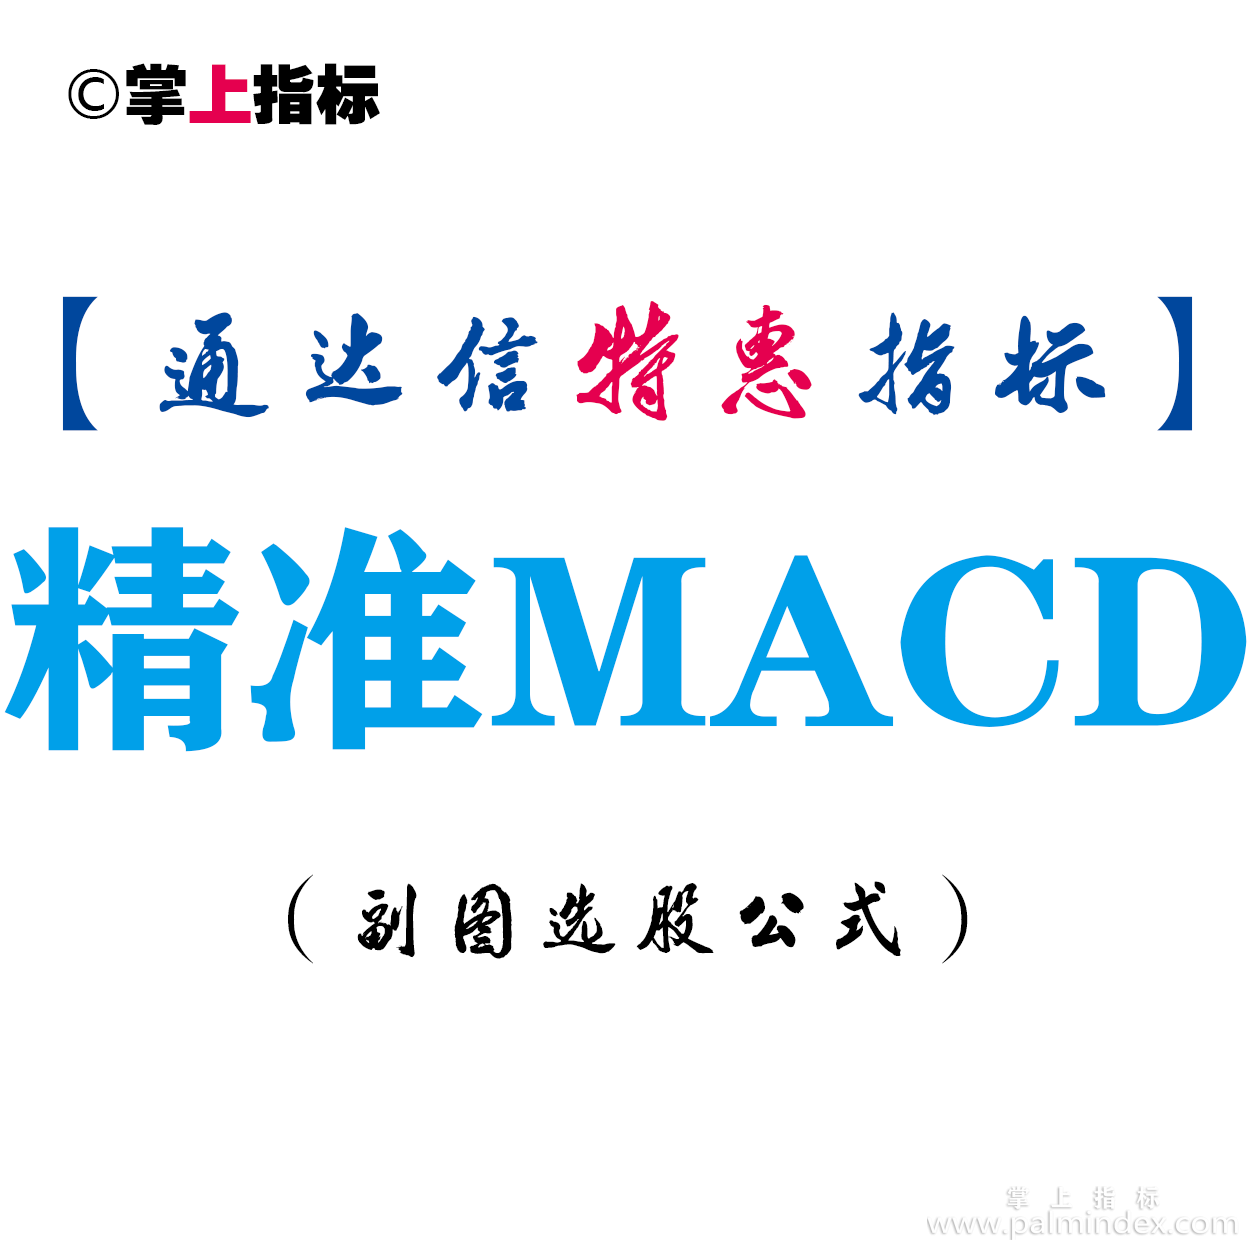 【通达信指标】精准MACD-副图指标公式